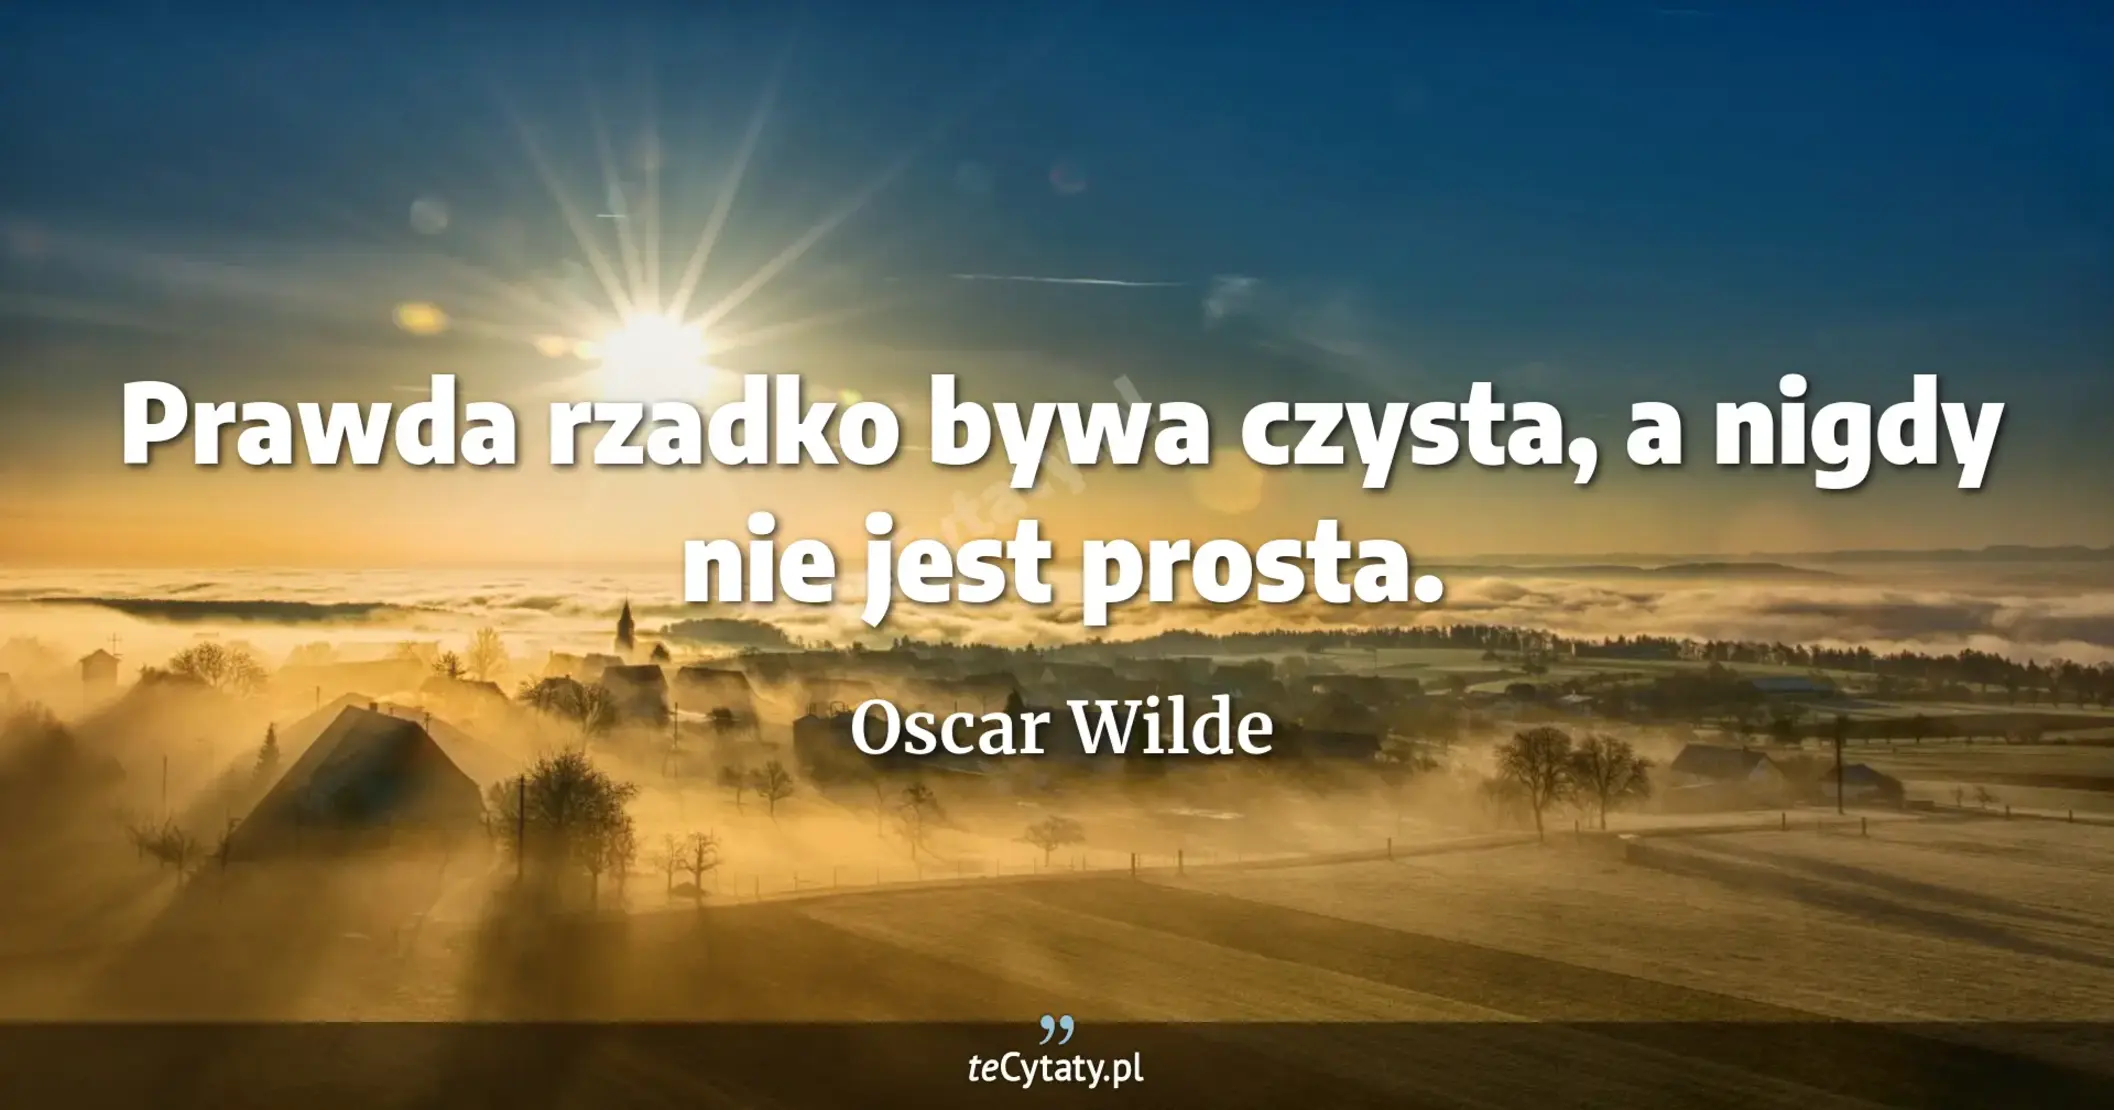 Prawda rzadko bywa czysta, a nigdy nie jest prosta. - Oscar Wilde